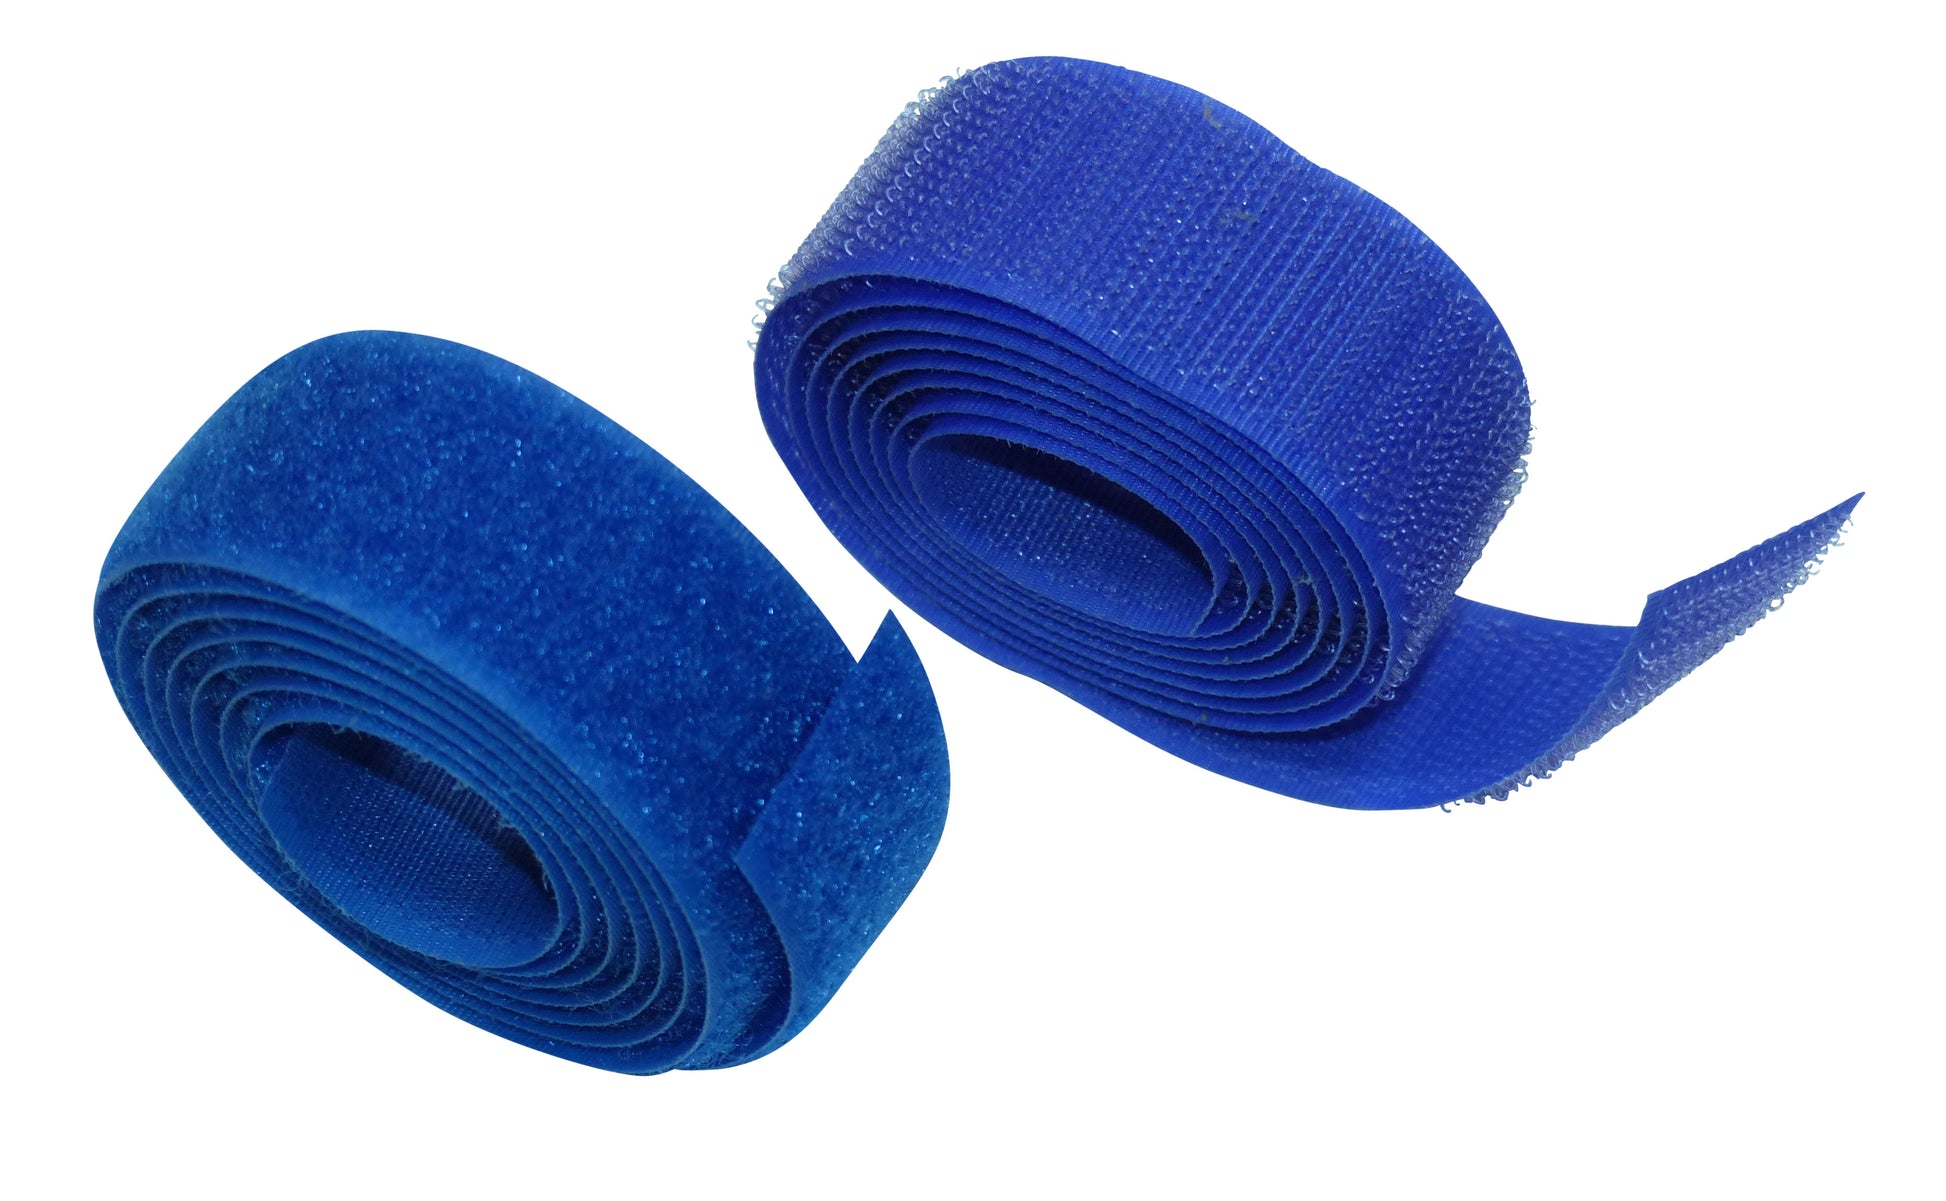 Benristraps 25mm sewable hook and loop tape (2 metres) both hook and loop in blue